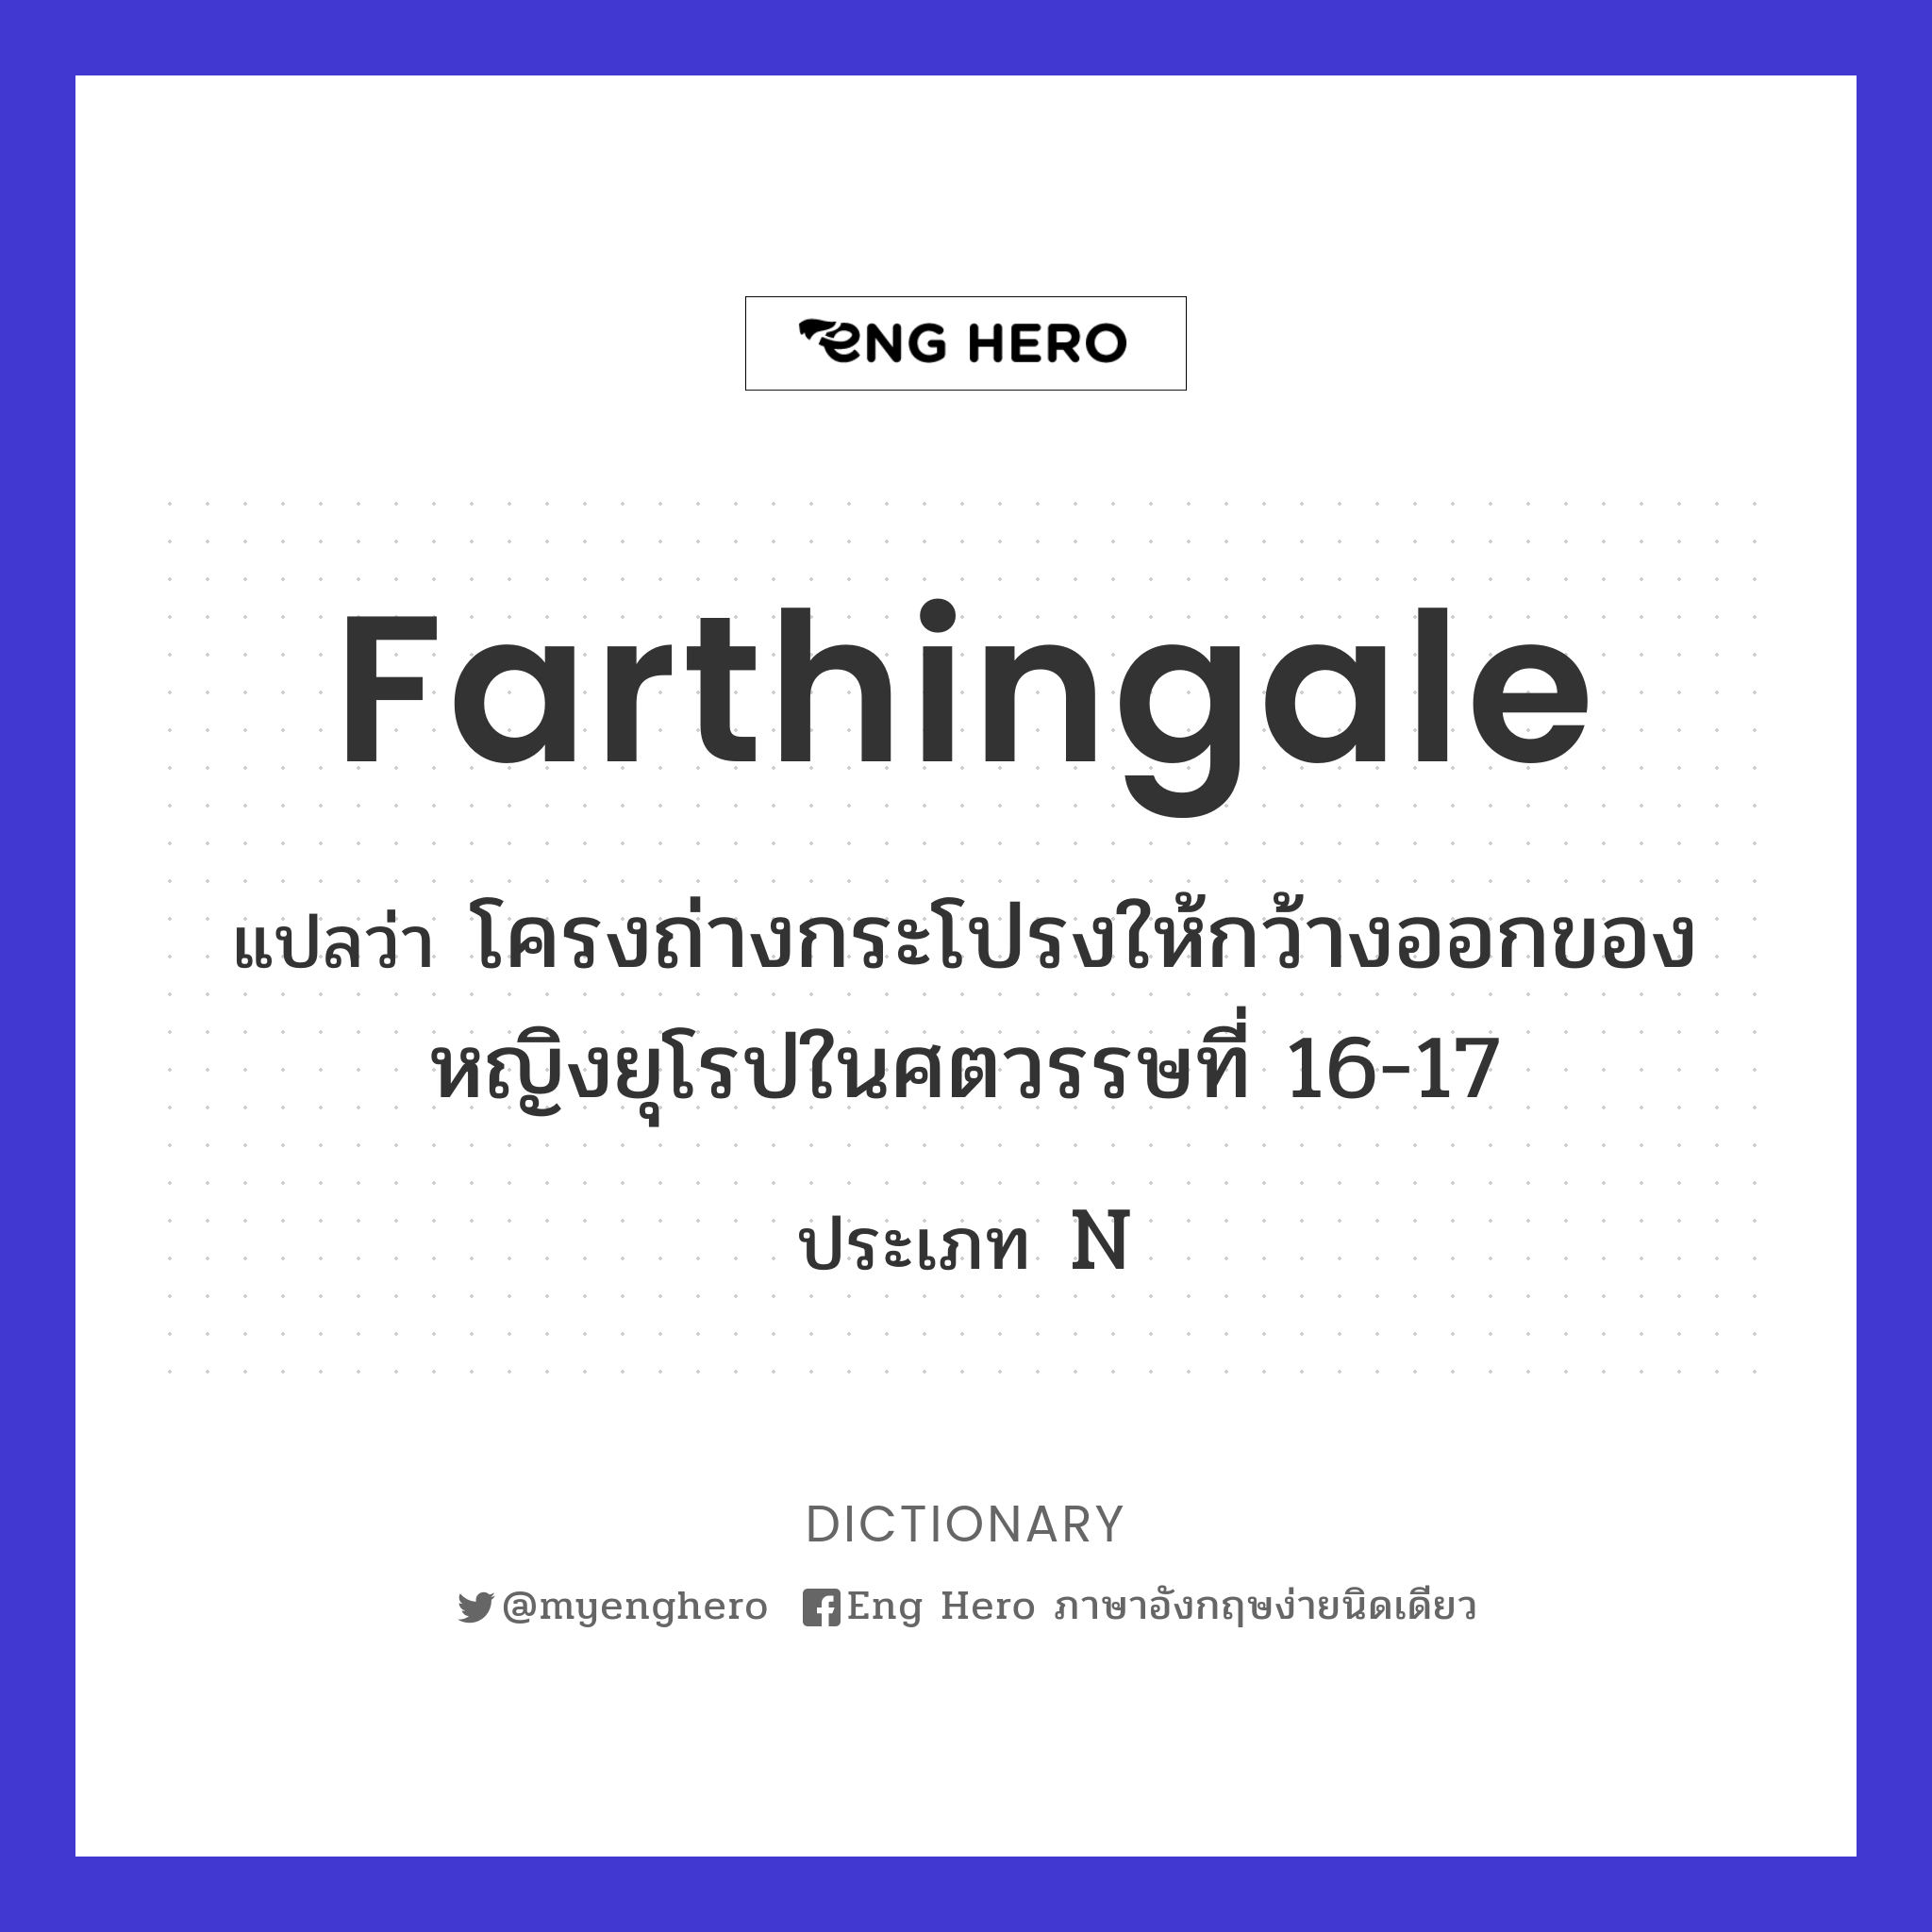 farthingale